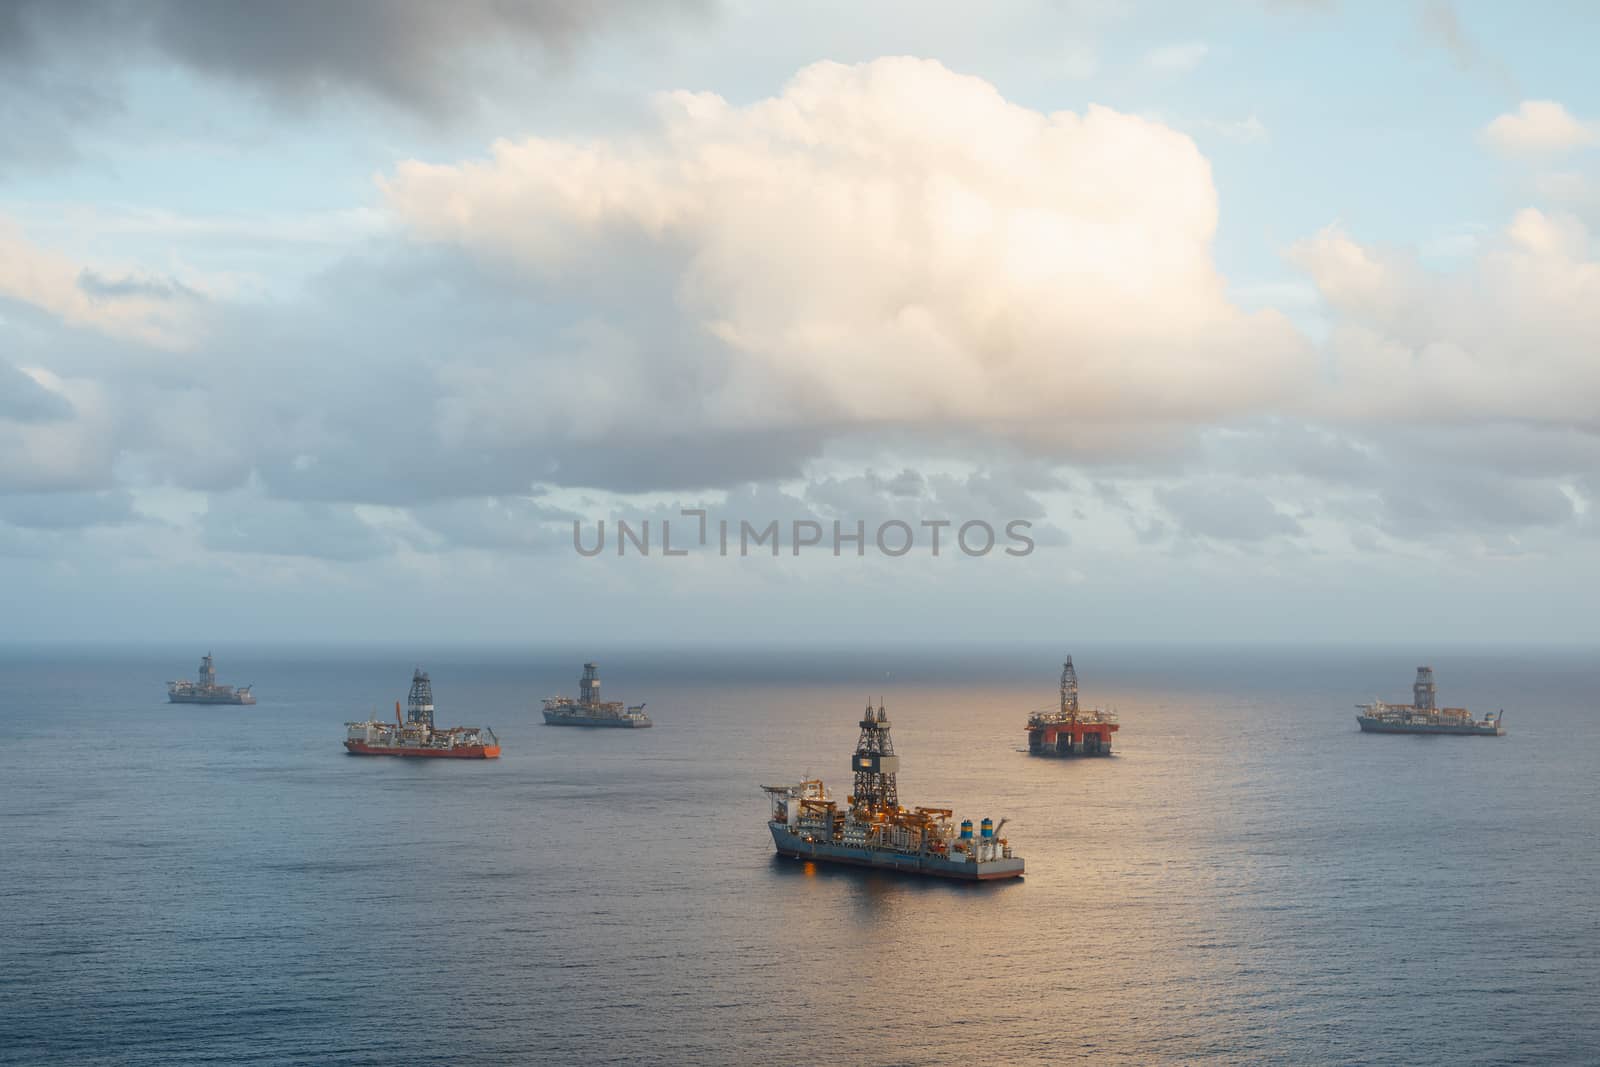 offshore oil platform and gas drillships by nikkytok